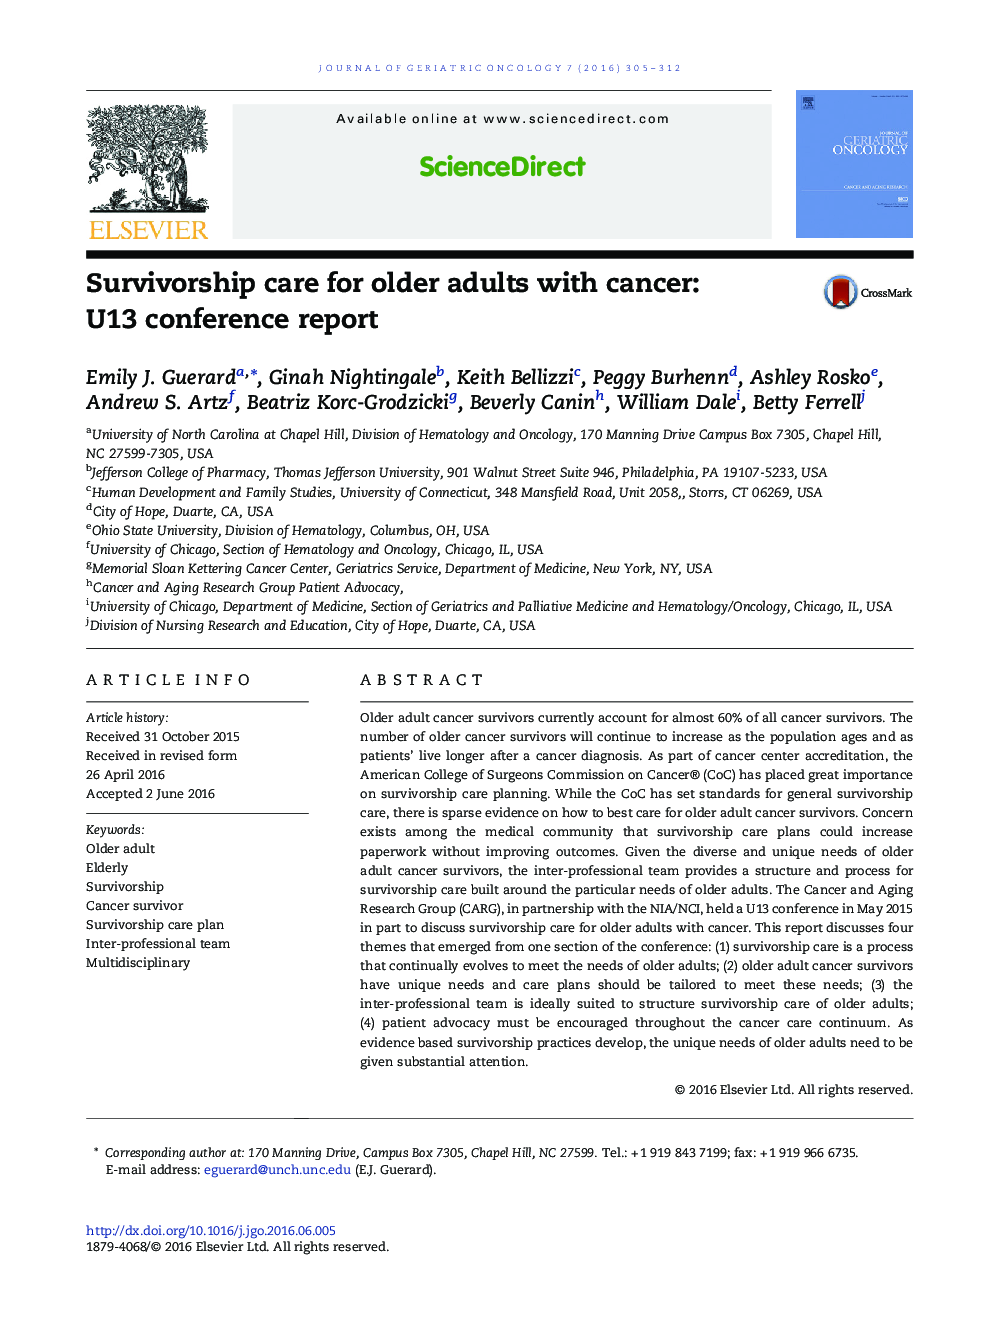 مراقبت بقاء برای افراد مسن مبتلا به سرطان: گزارش کنفرانس U13